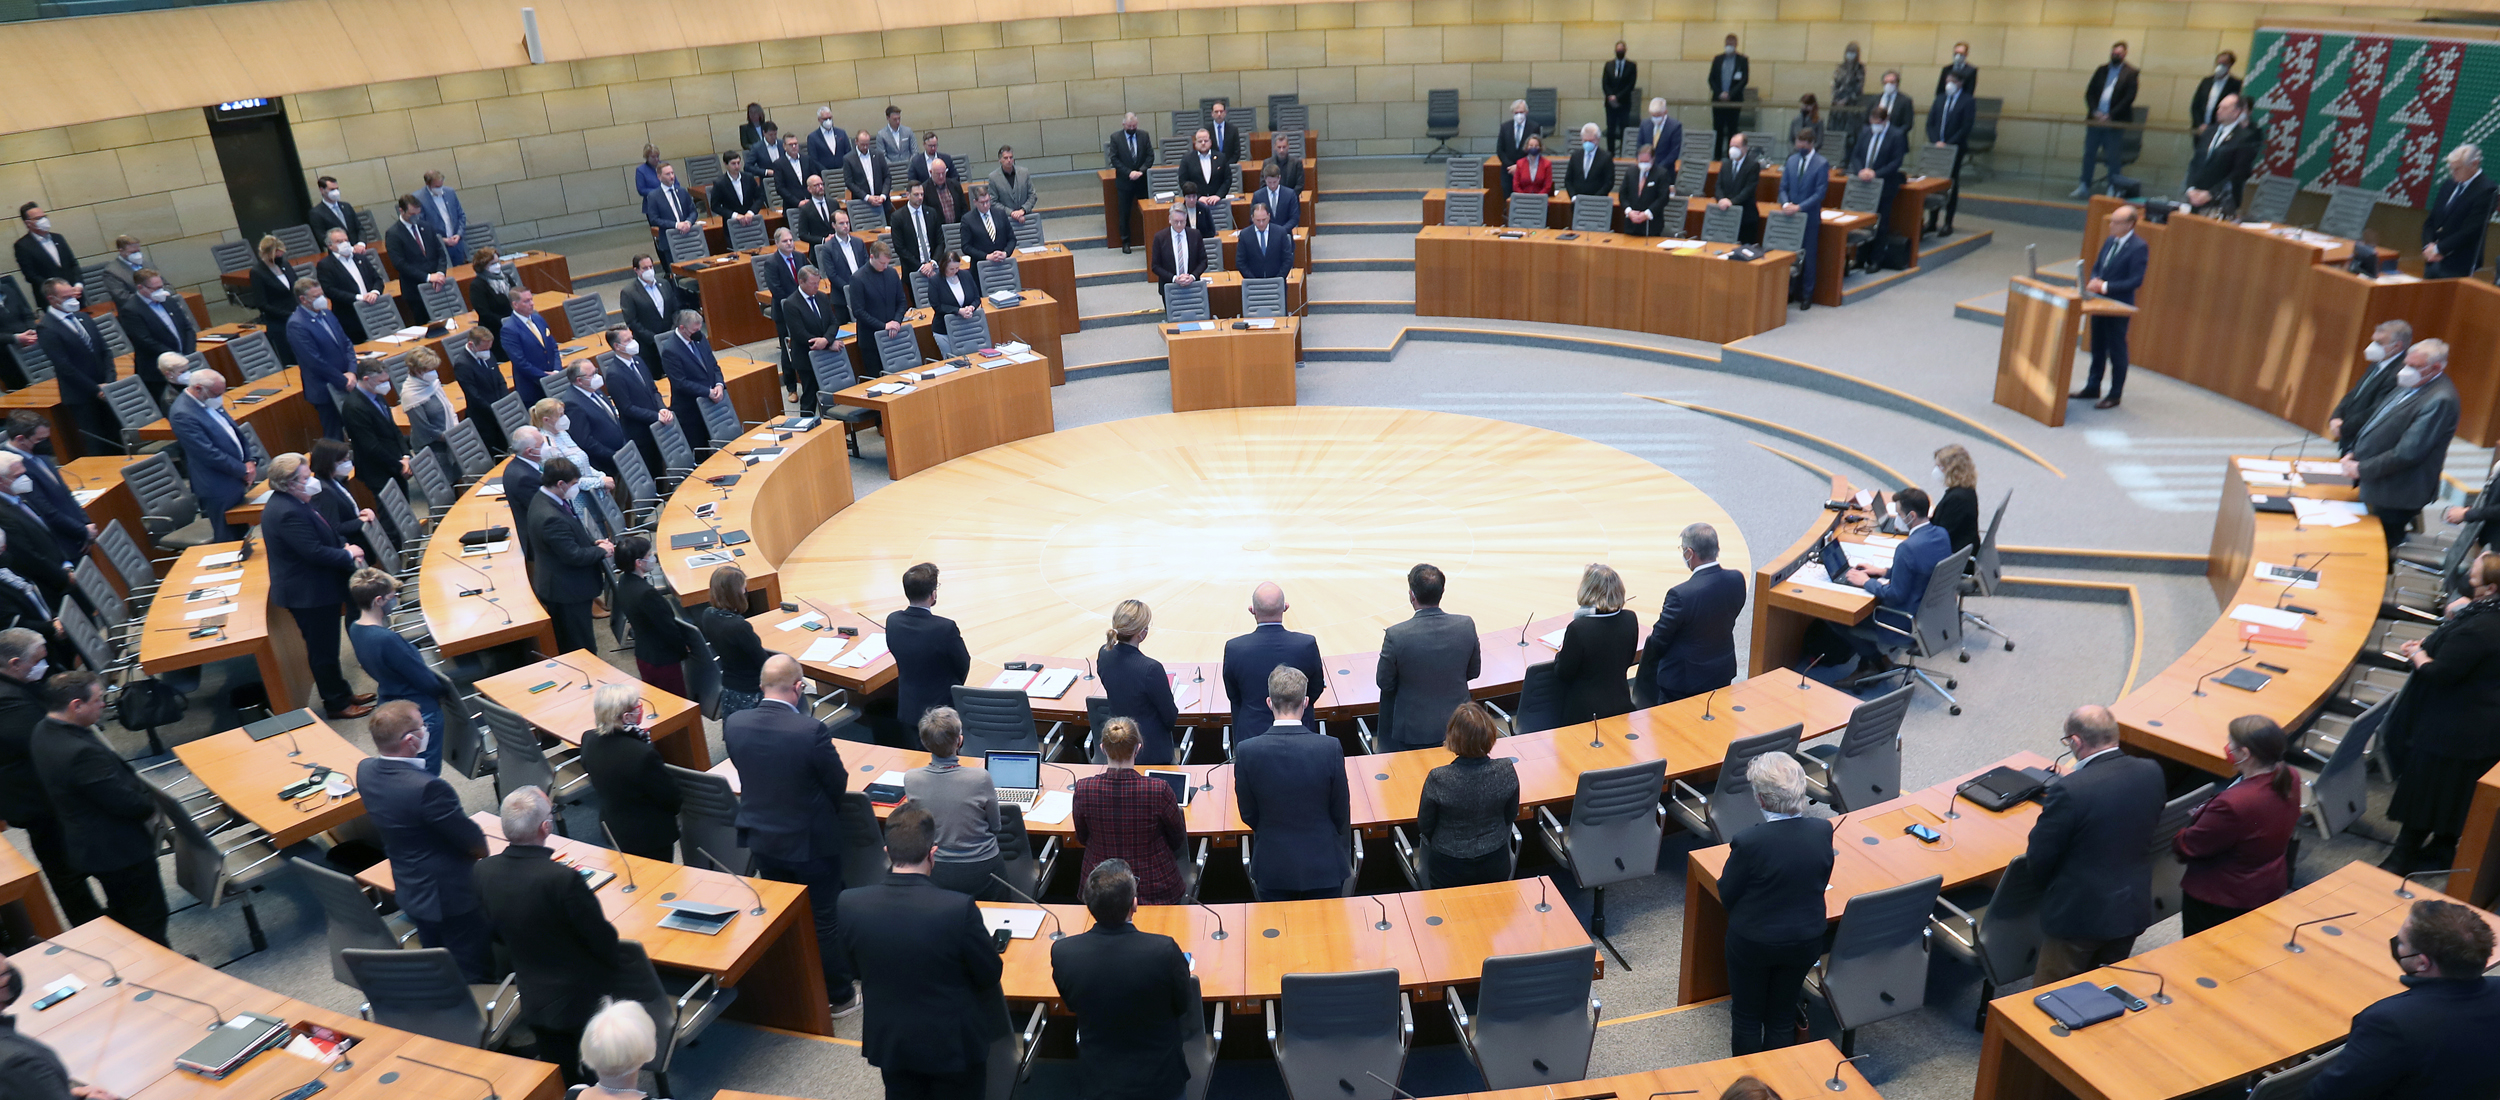 Innenansicht des Plenarsaals des NRW-Landtags